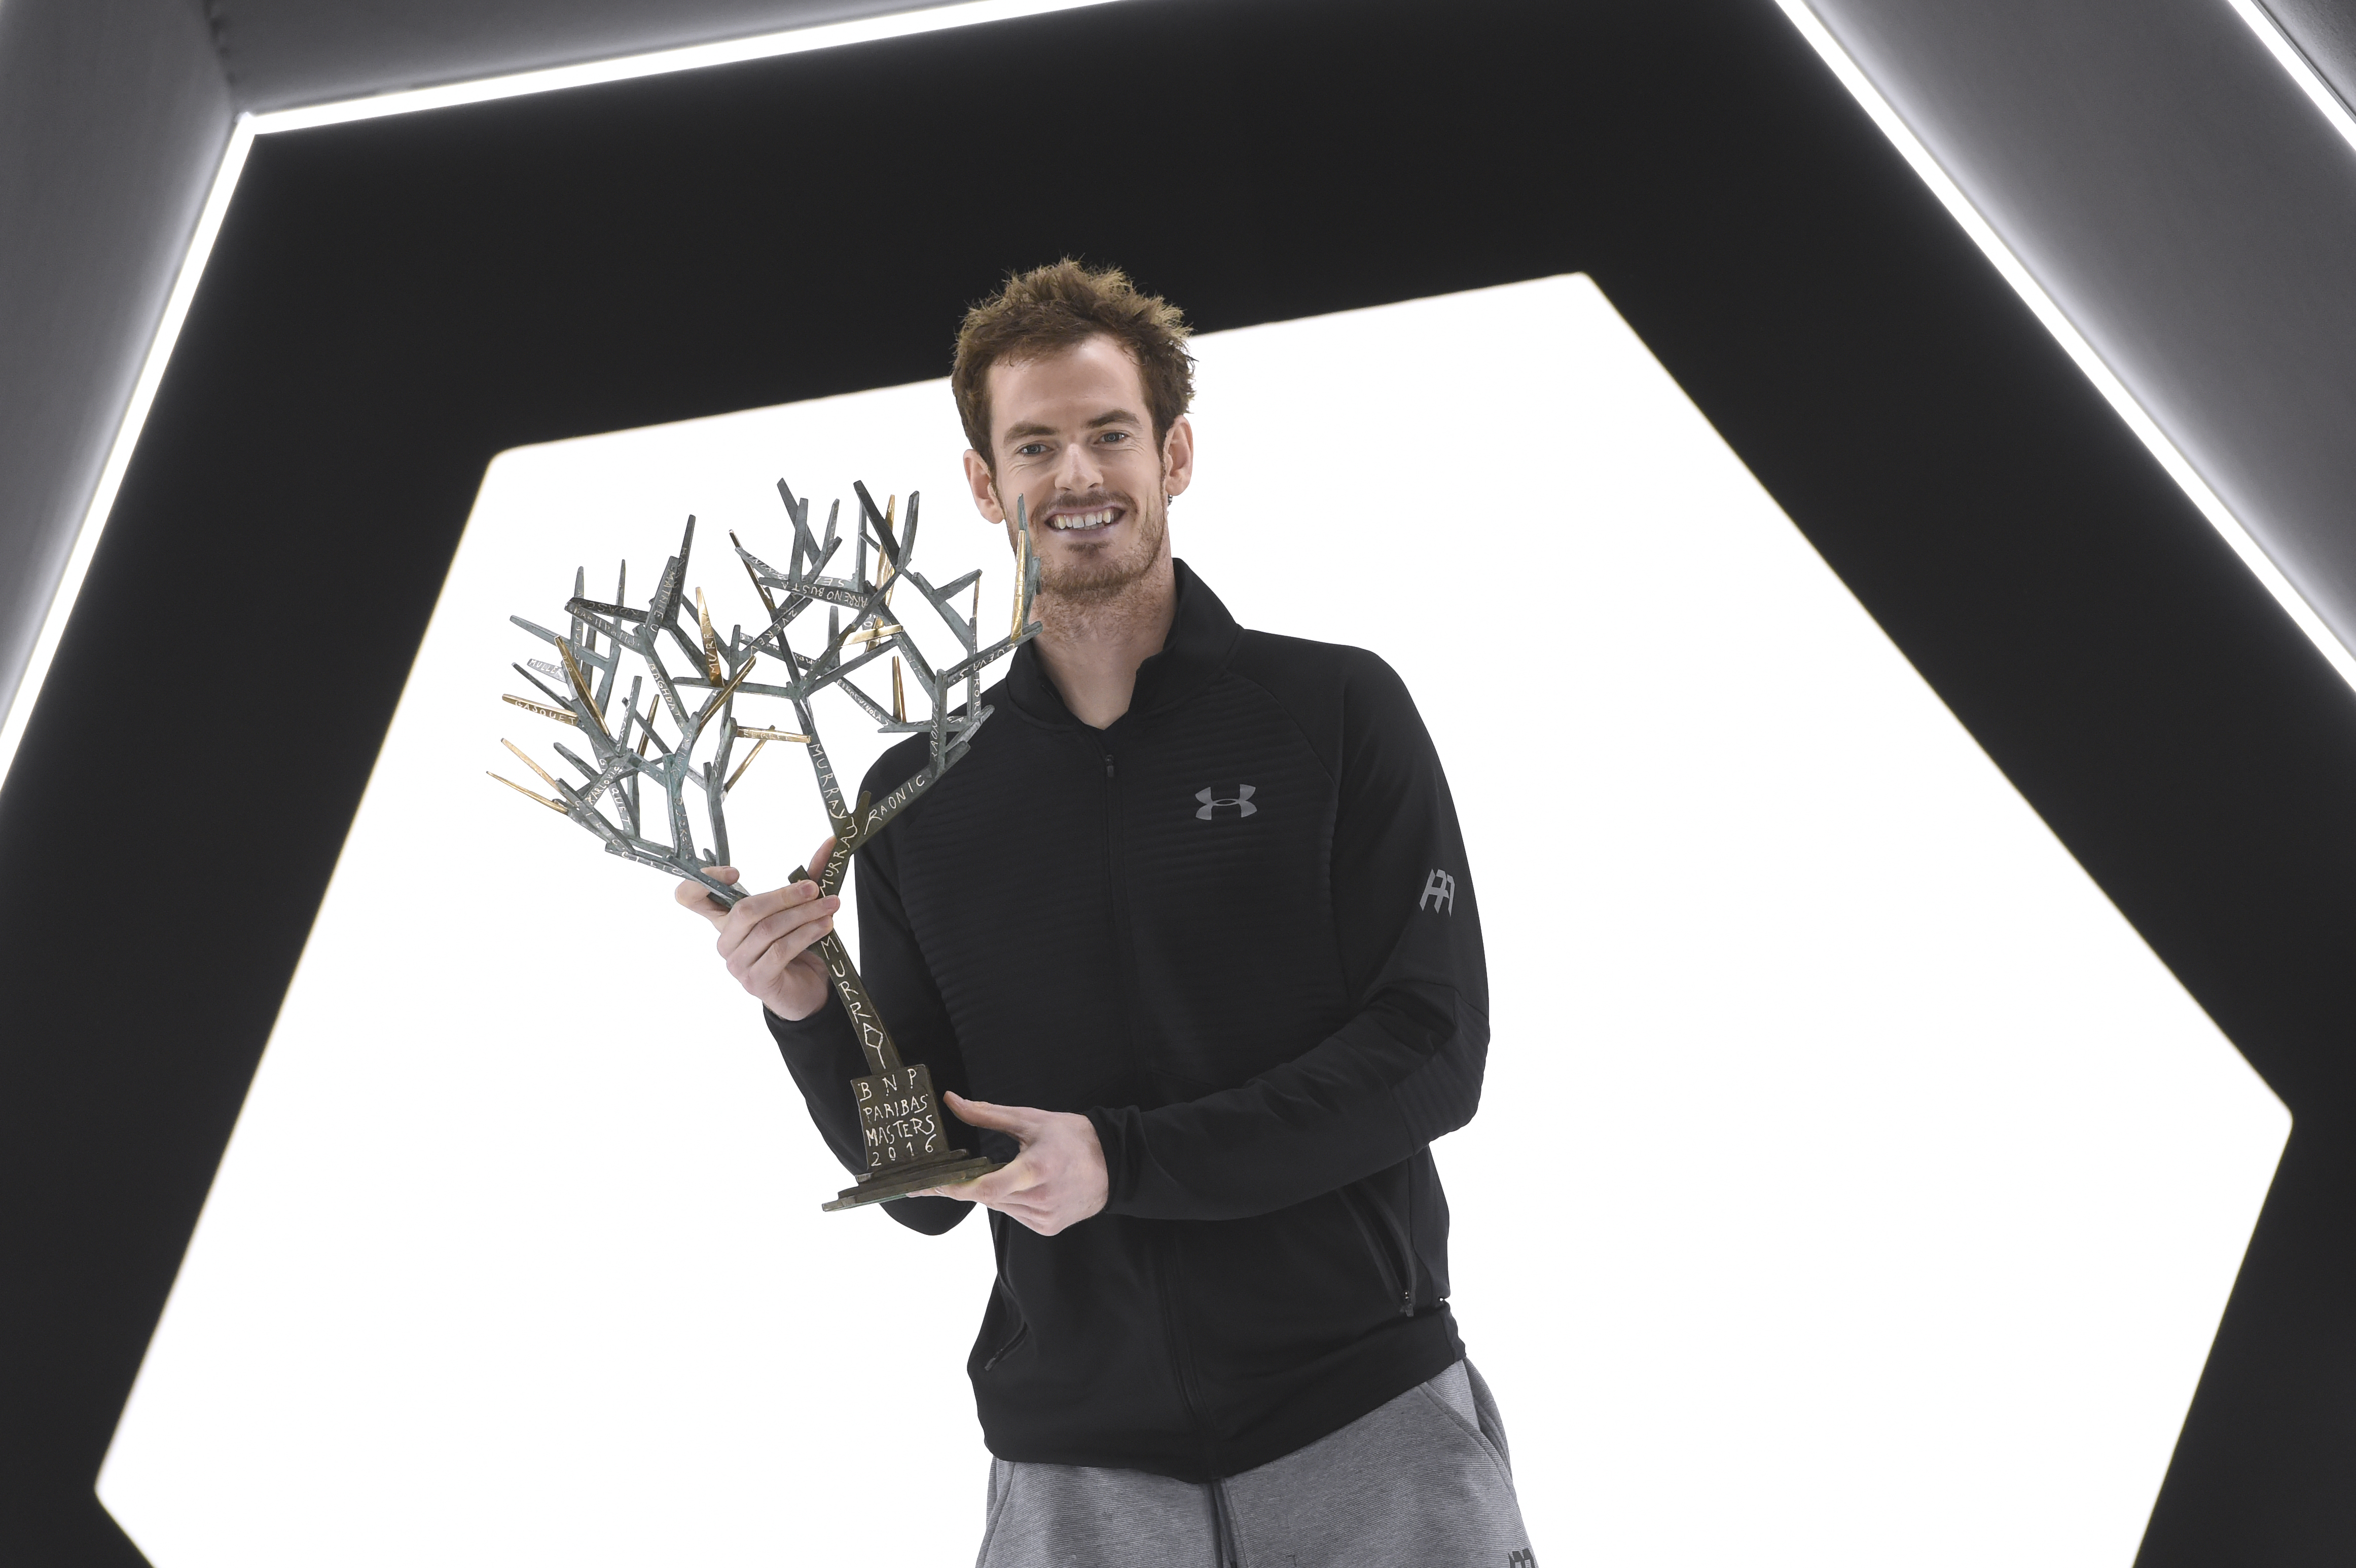 Classement ATP - Murray détrône Djokovic, Federer hors du top 10